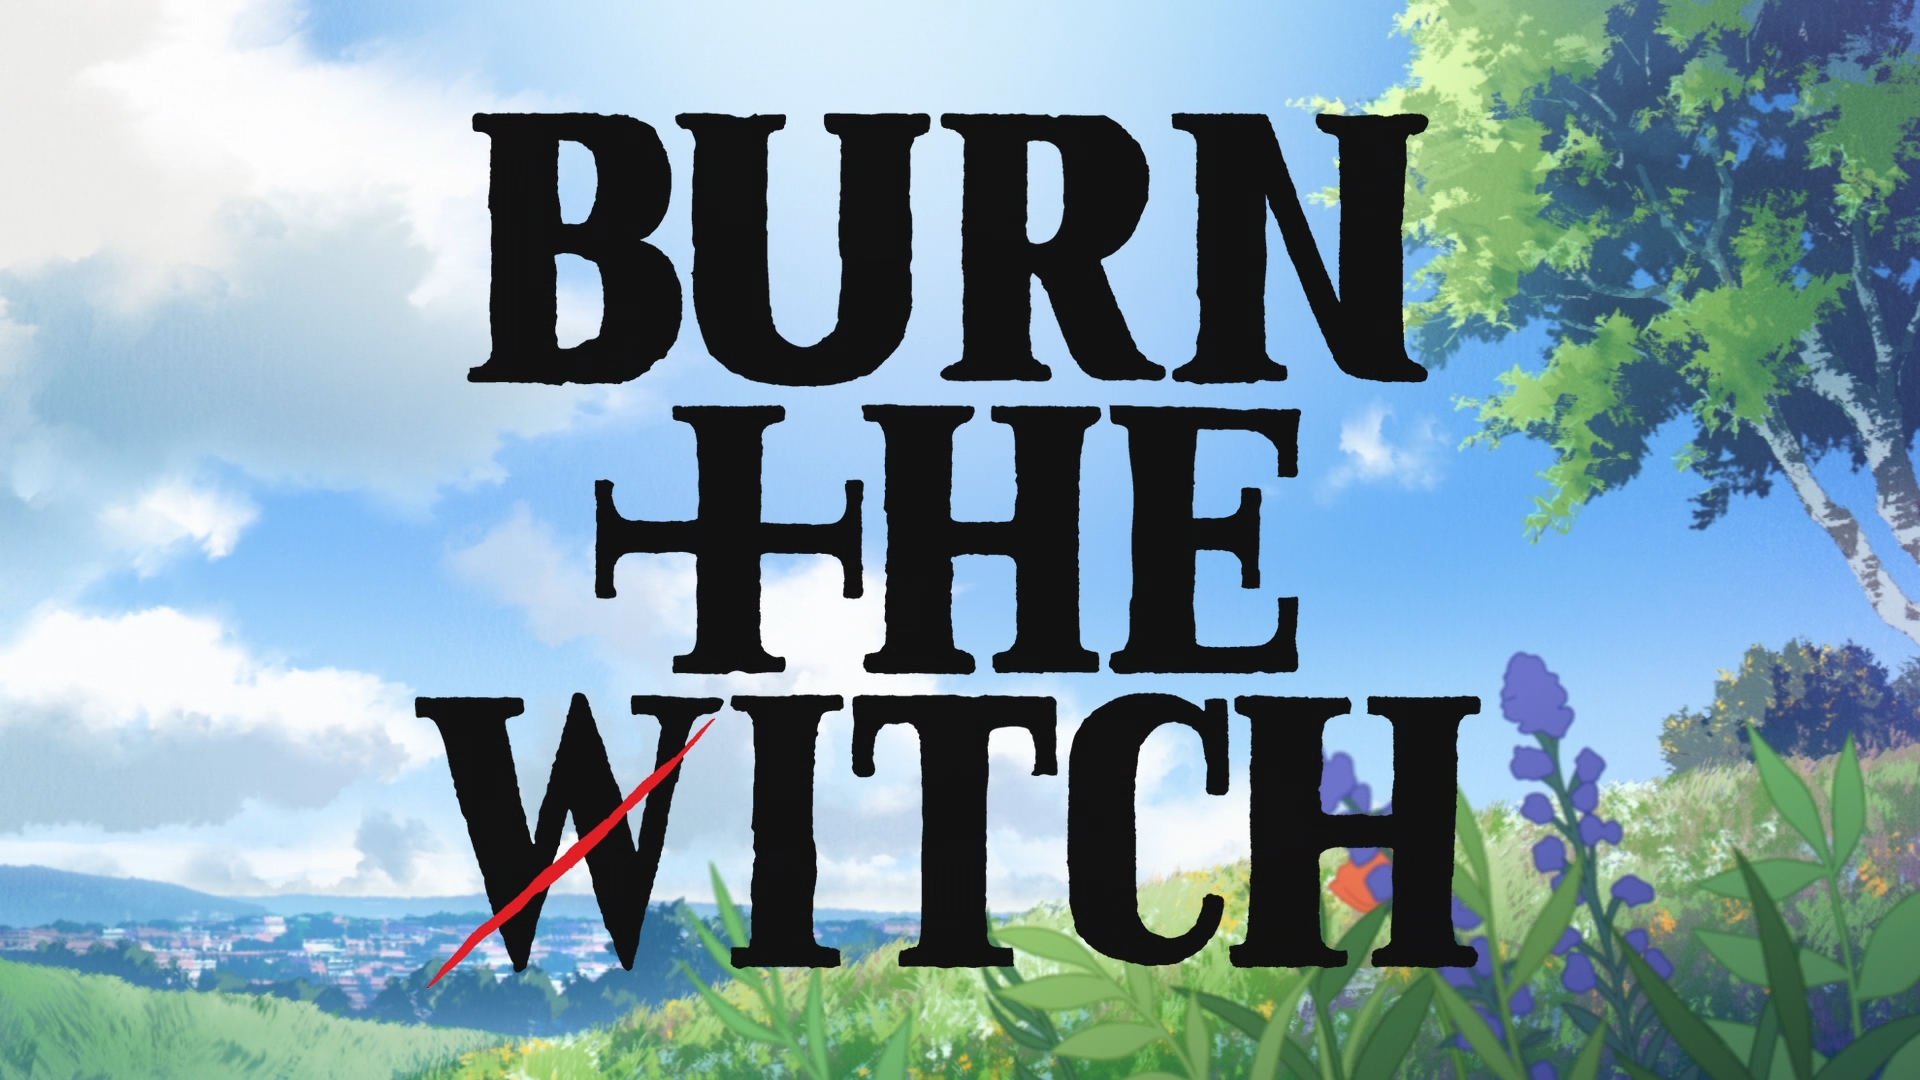 Burn Witch Burn by A. Merritt